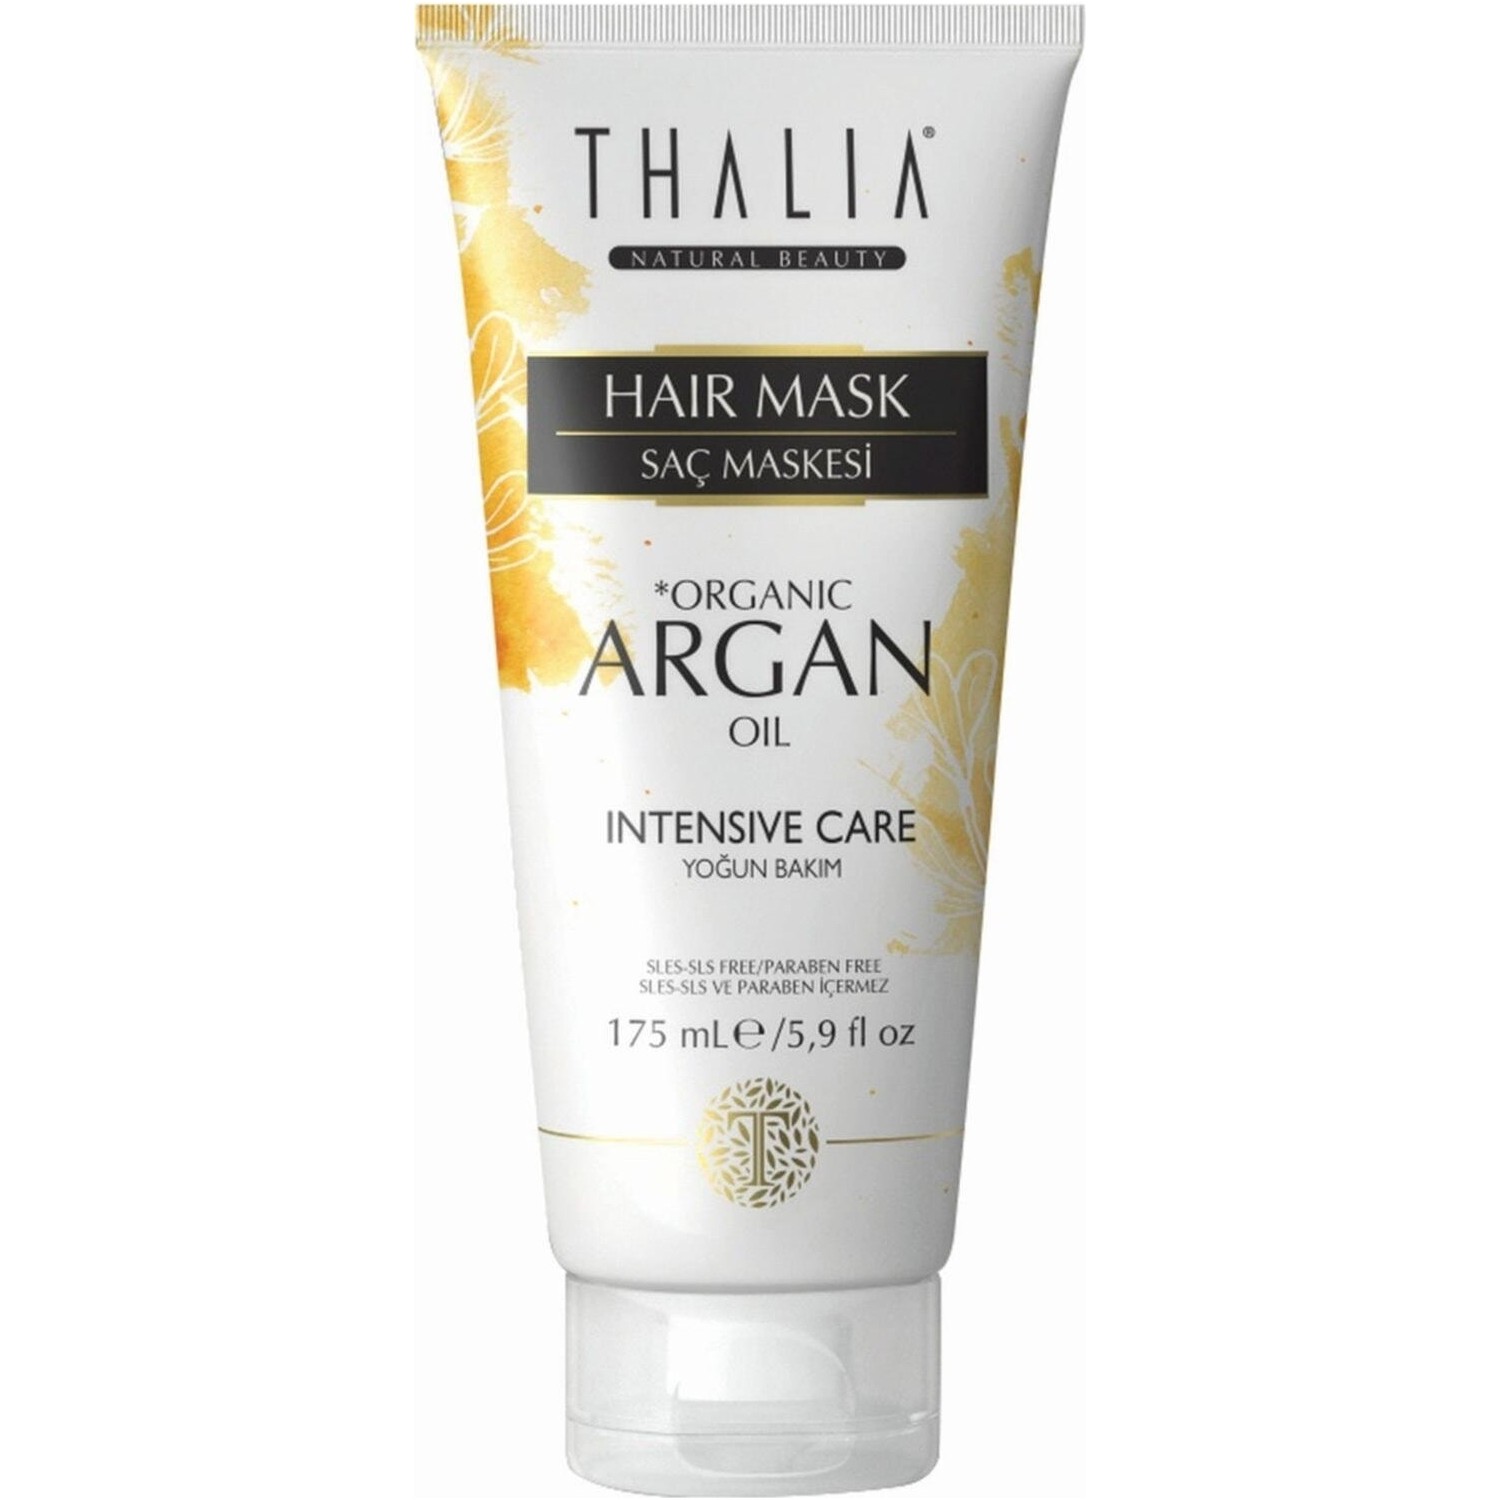 Увлажняющая маска Thalia Organic Argan Oil для волос, 175 мл крем краска для волос с аргановым маслом 7 6 средний блондининтенсивно фиолетовый 100 мл